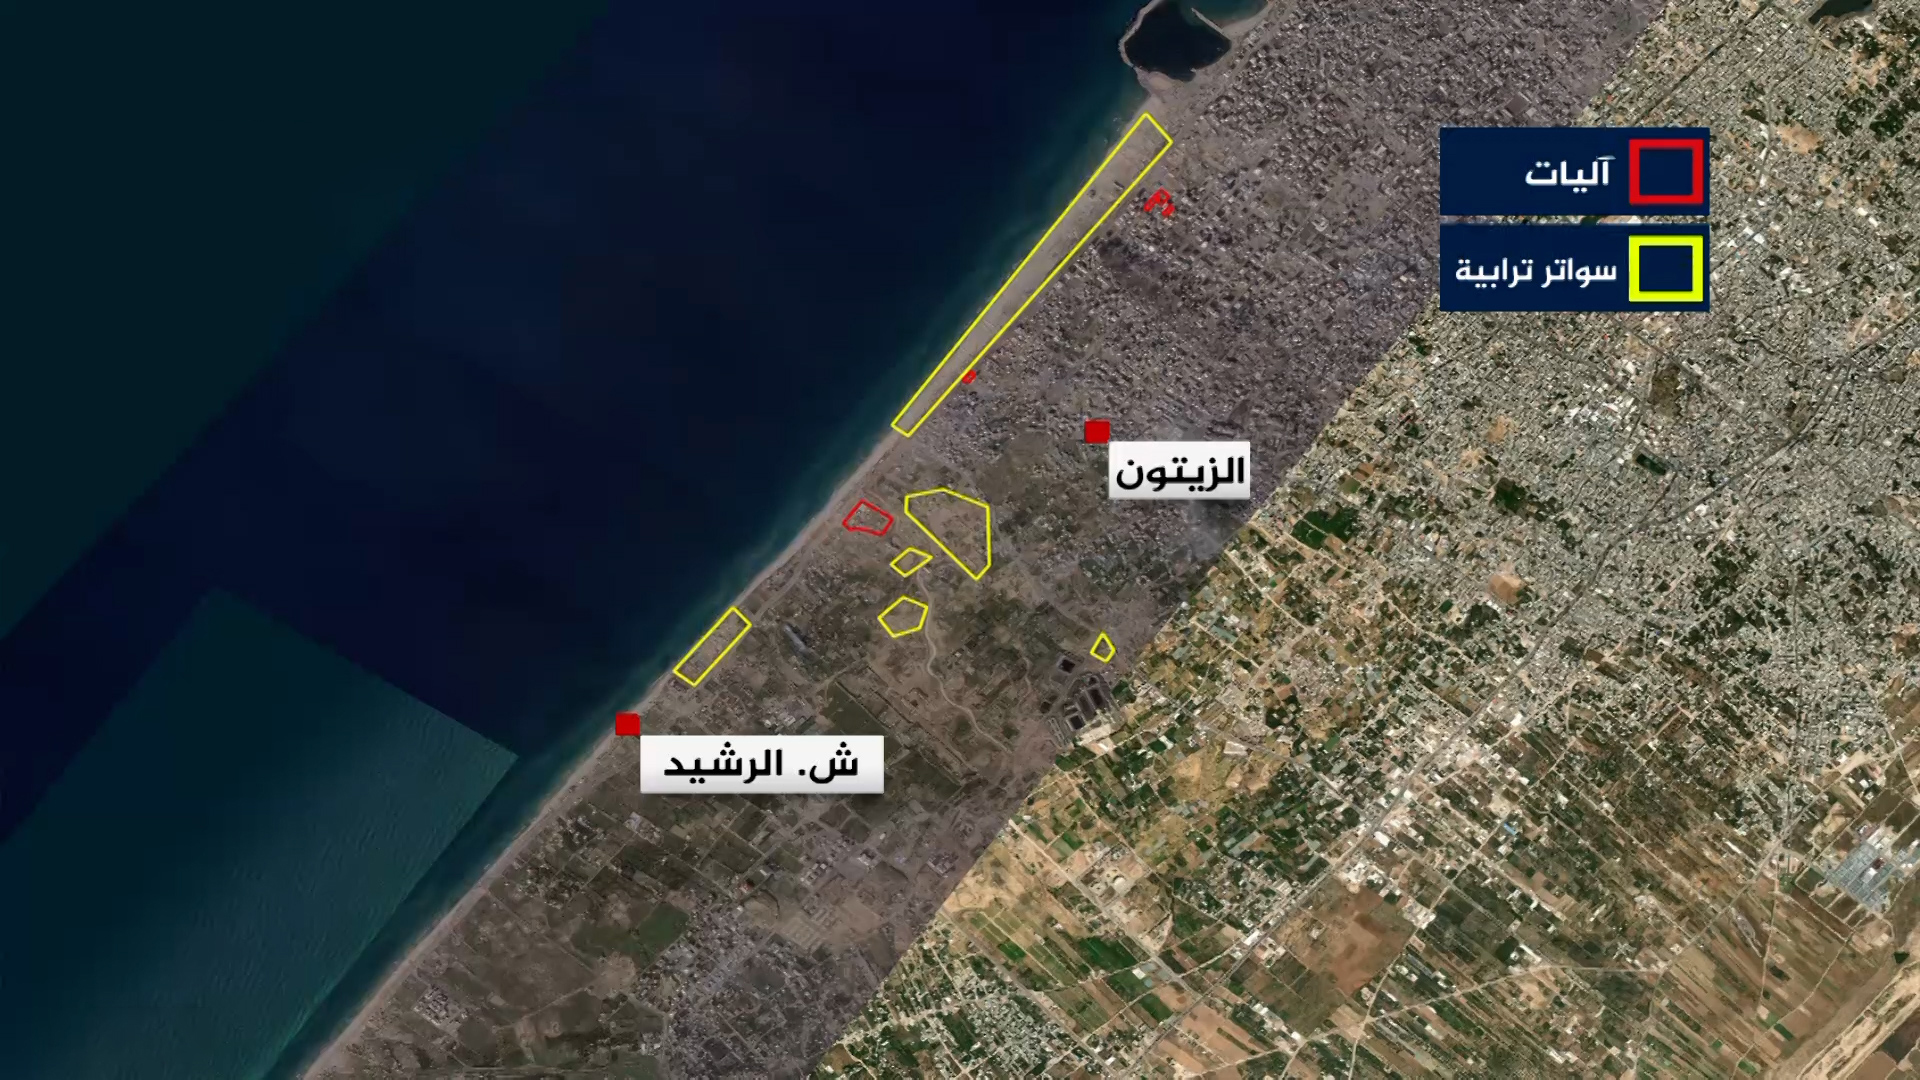 شاهد.. صور أقمار صناعية تُظهر تراجعا كبيرا لآليات الاحتلال على ساحل غزة | أخبار – البوكس نيوز